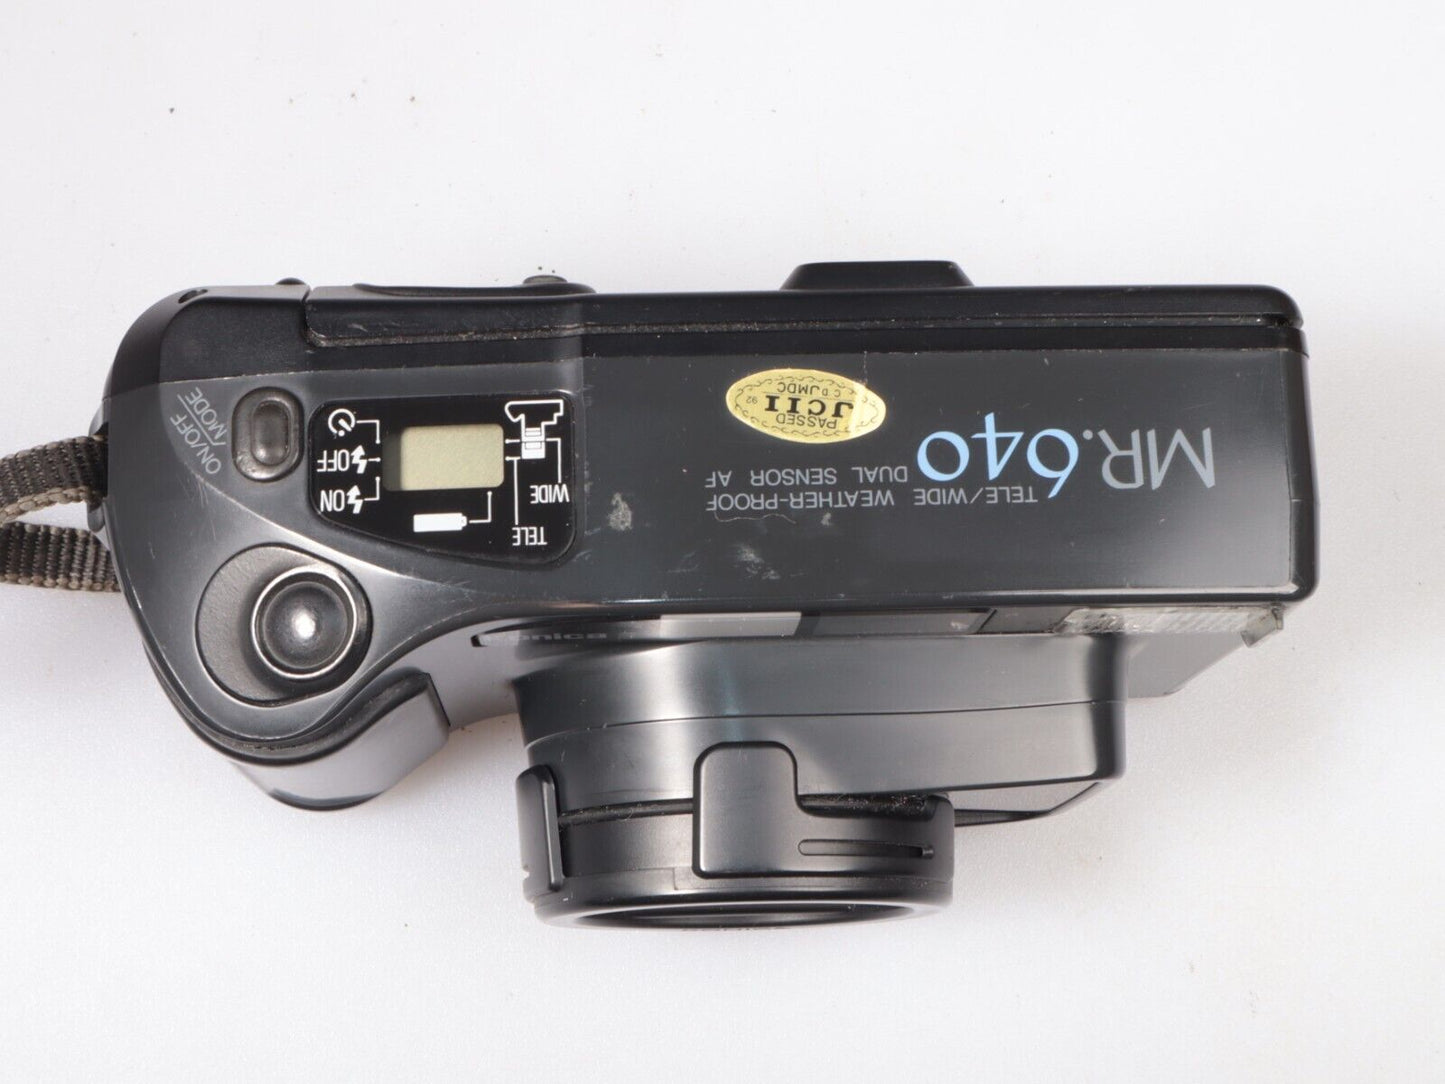 Konica MR 640 Telegroothoek | 35 mm richt- en schietfilmcamera | Zwart 